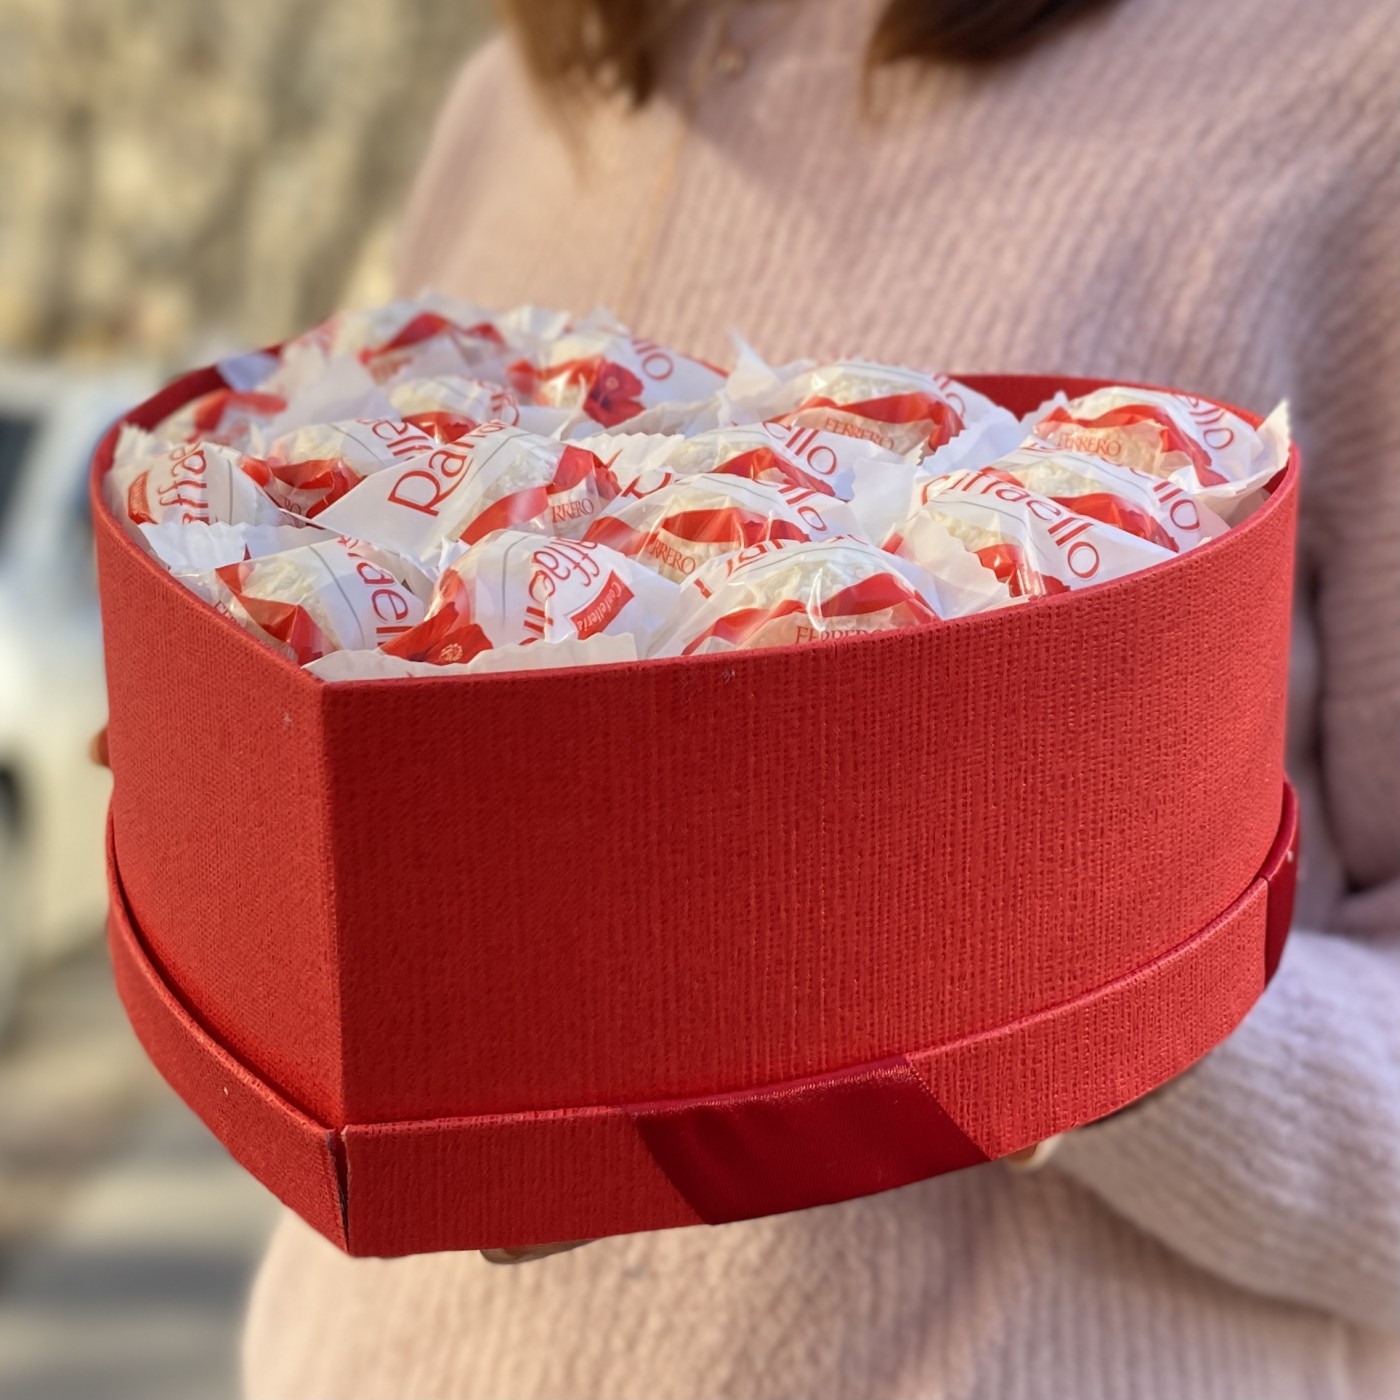 Коробка с конфетами Рафаэлло